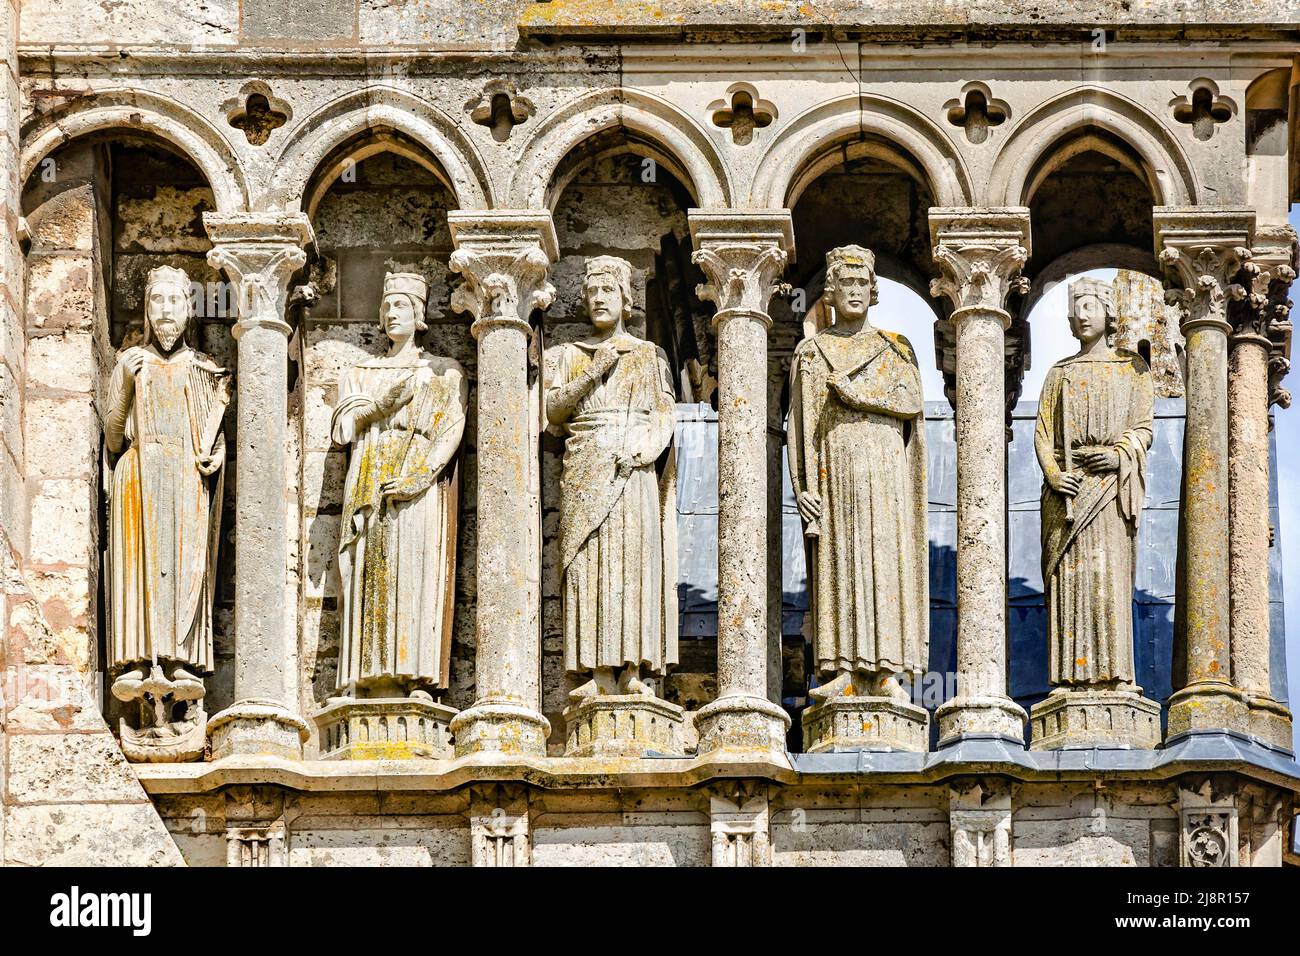 Chartres, France - 19 avril 2013 : statues au portail sud de la cathédrale de Chartres - l'un des plus beaux exemples de l'architecture gothique française, co Banque D'Images